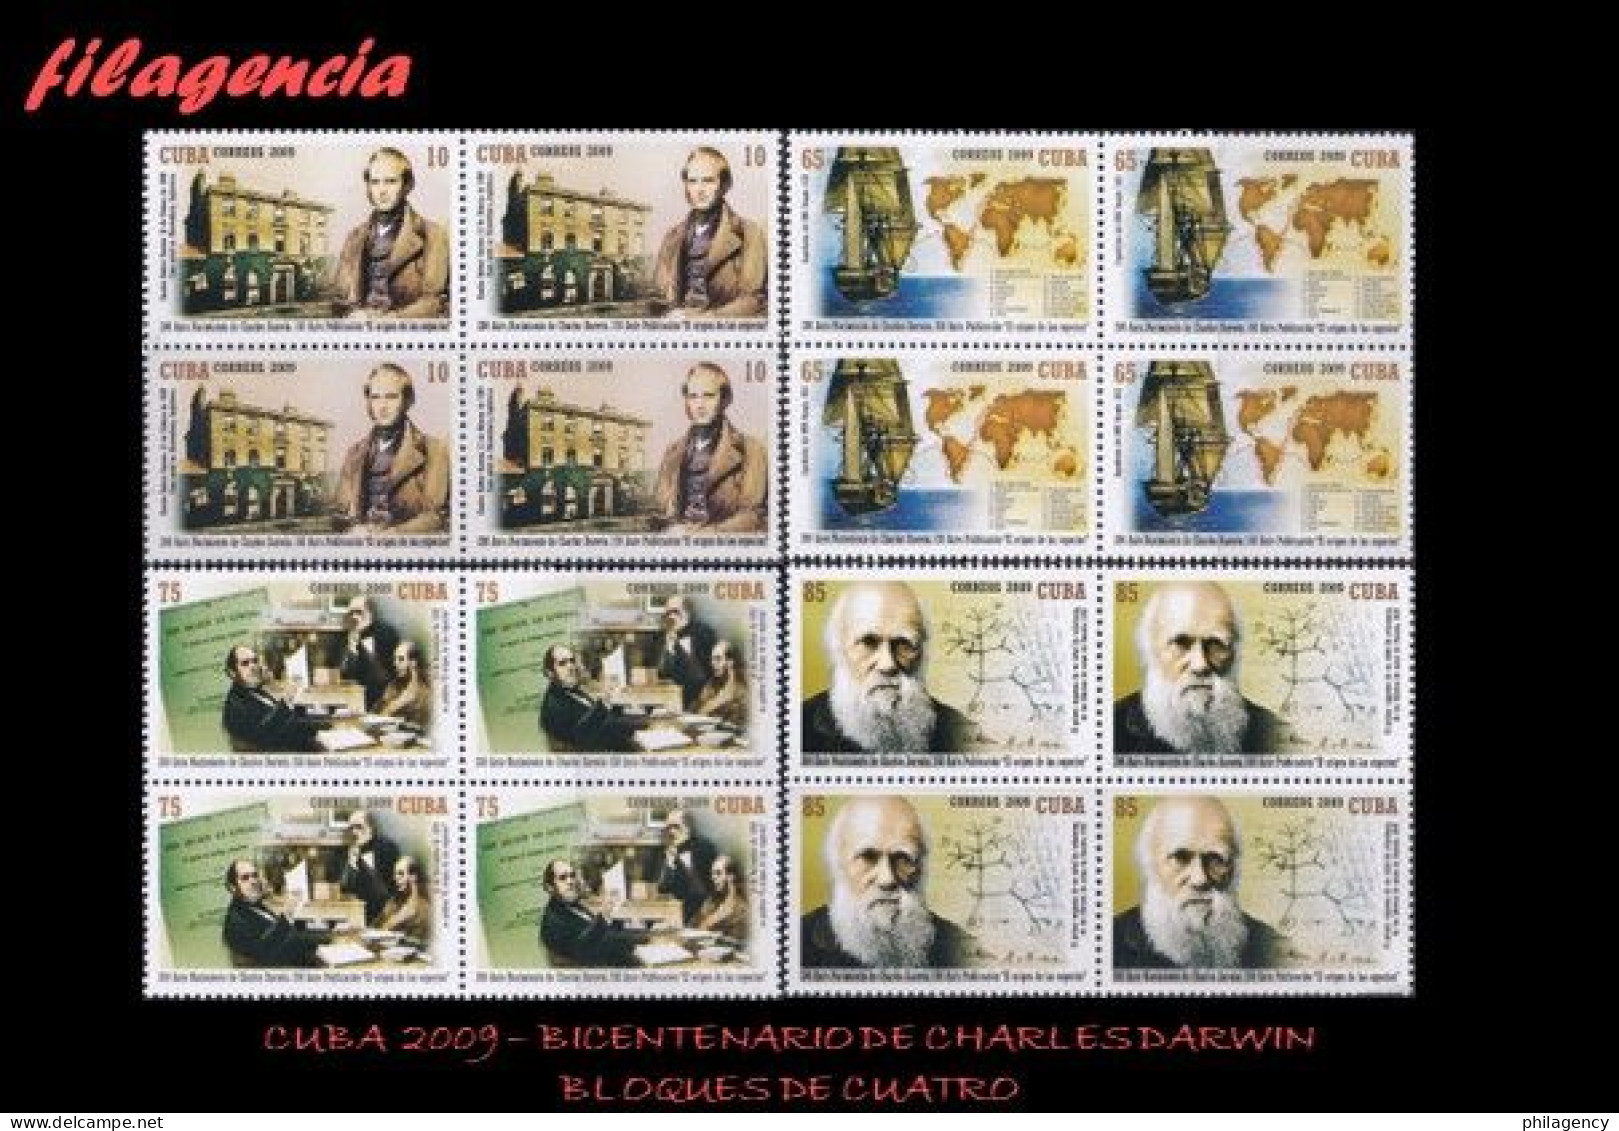 CUBA. BLOQUES DE CUATRO. 2009-07 BICENTENARIO DE CHARLES DARWIN - Unused Stamps